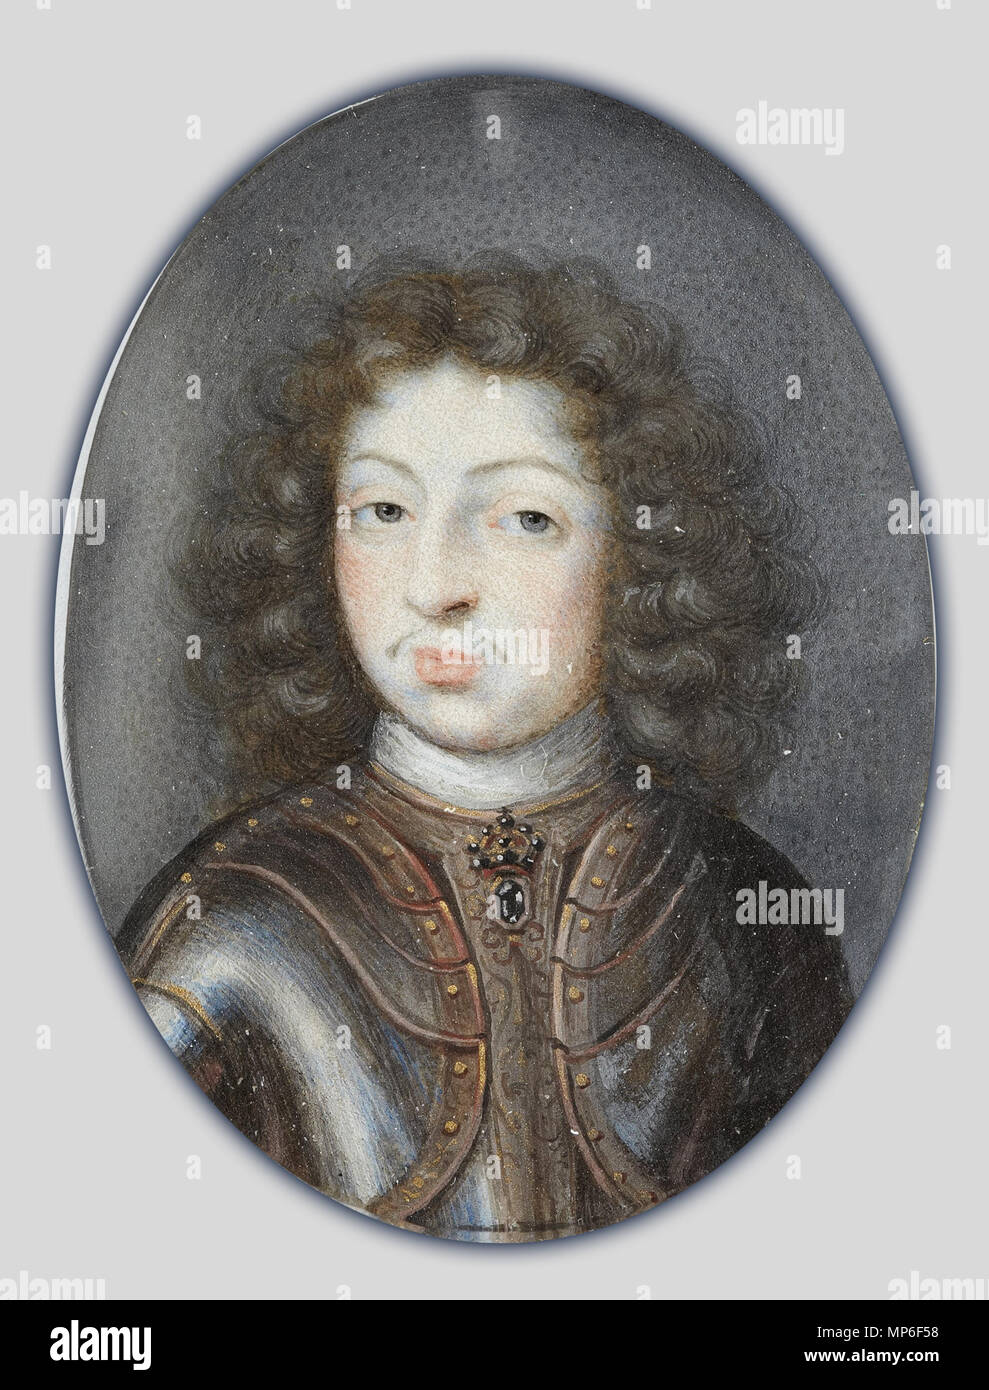 Retrato en miniatura de Carlos XI, Rey de Suecia 1660-1697 (1672 - 1675). 988 Pierre Signac - Miniatura retrato de Carlos XI, Rey de Suecia 1660-1697 - Proyecto de arte de Google Foto de stock